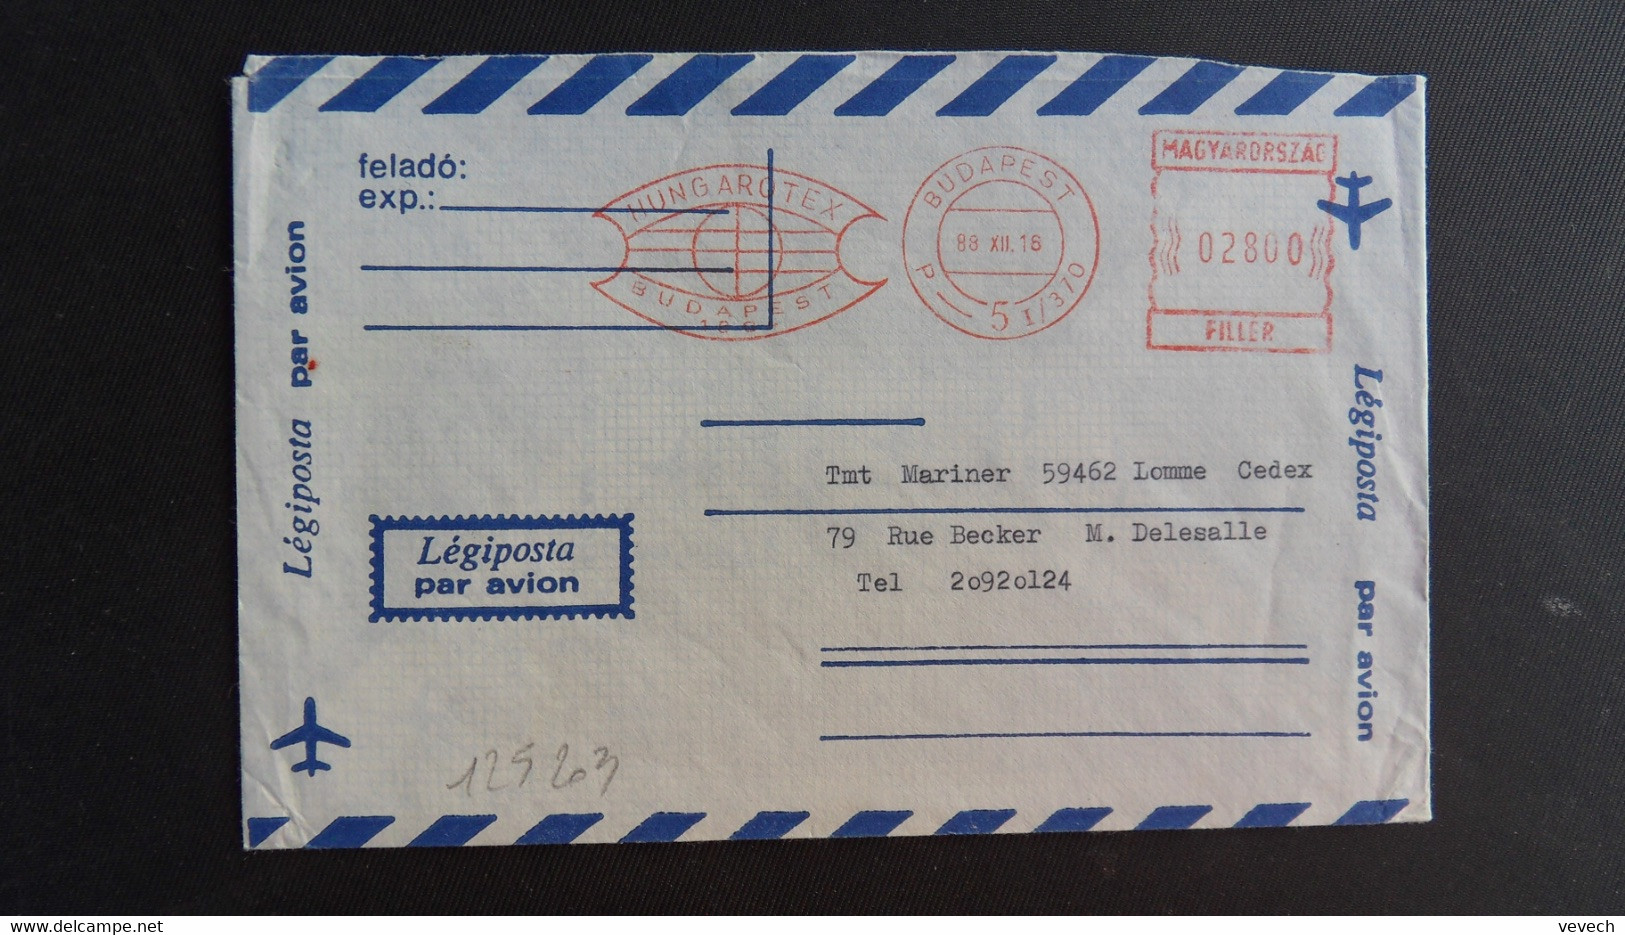 LETTRE Par Avion Pour La FRANCE EMA à 02800 Du 89 XII 16 BUDAPEST + HUNGAROTEX - Lettres & Documents